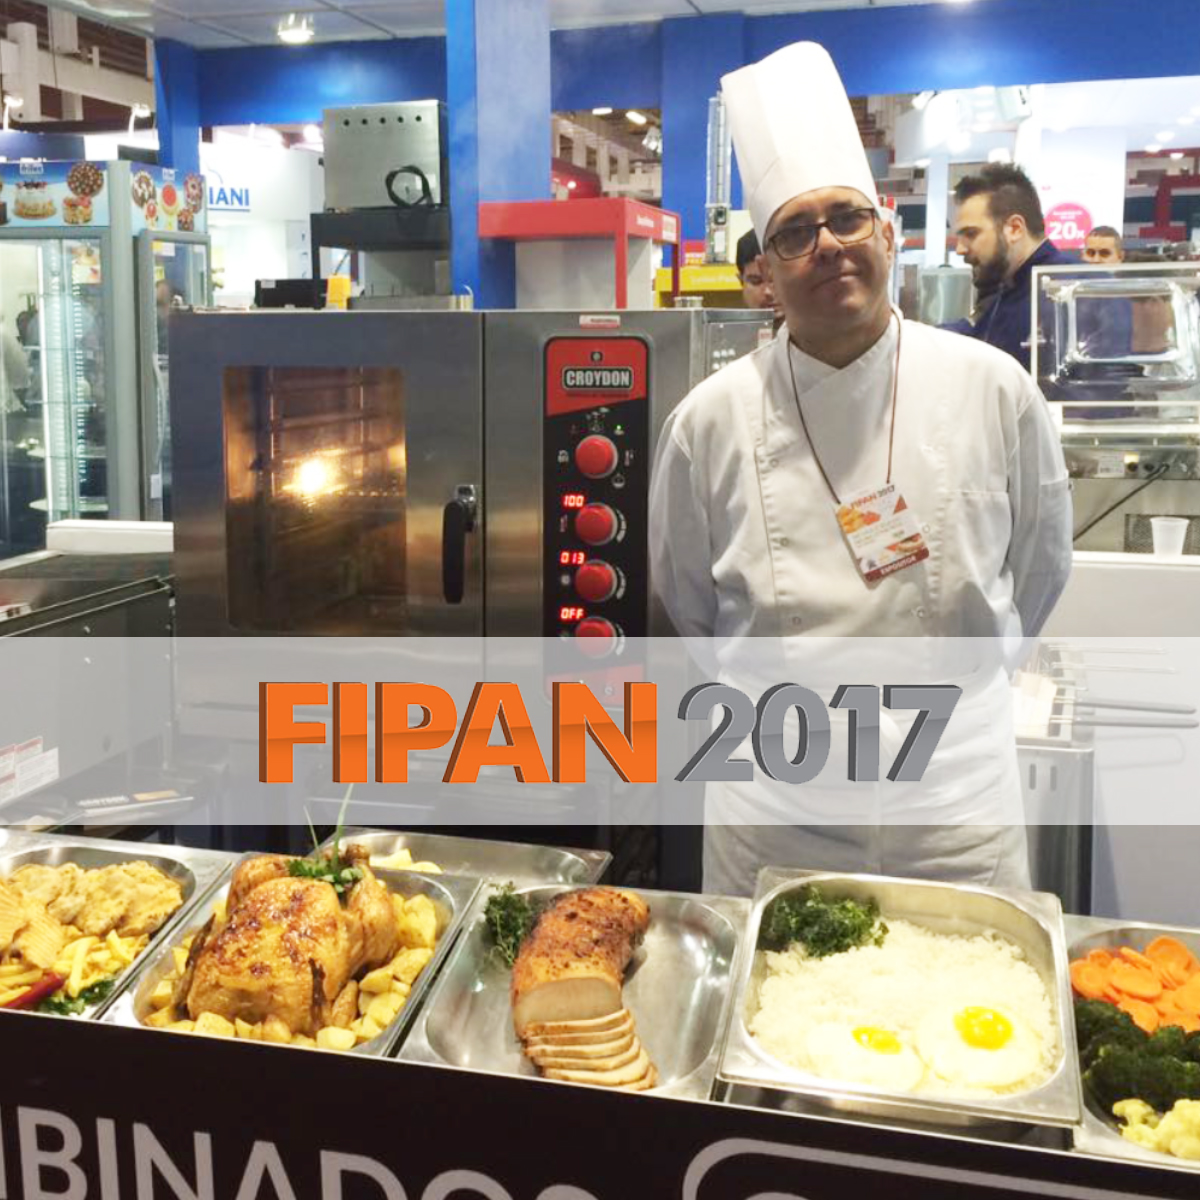 EVENTOS: FIPAN 2017